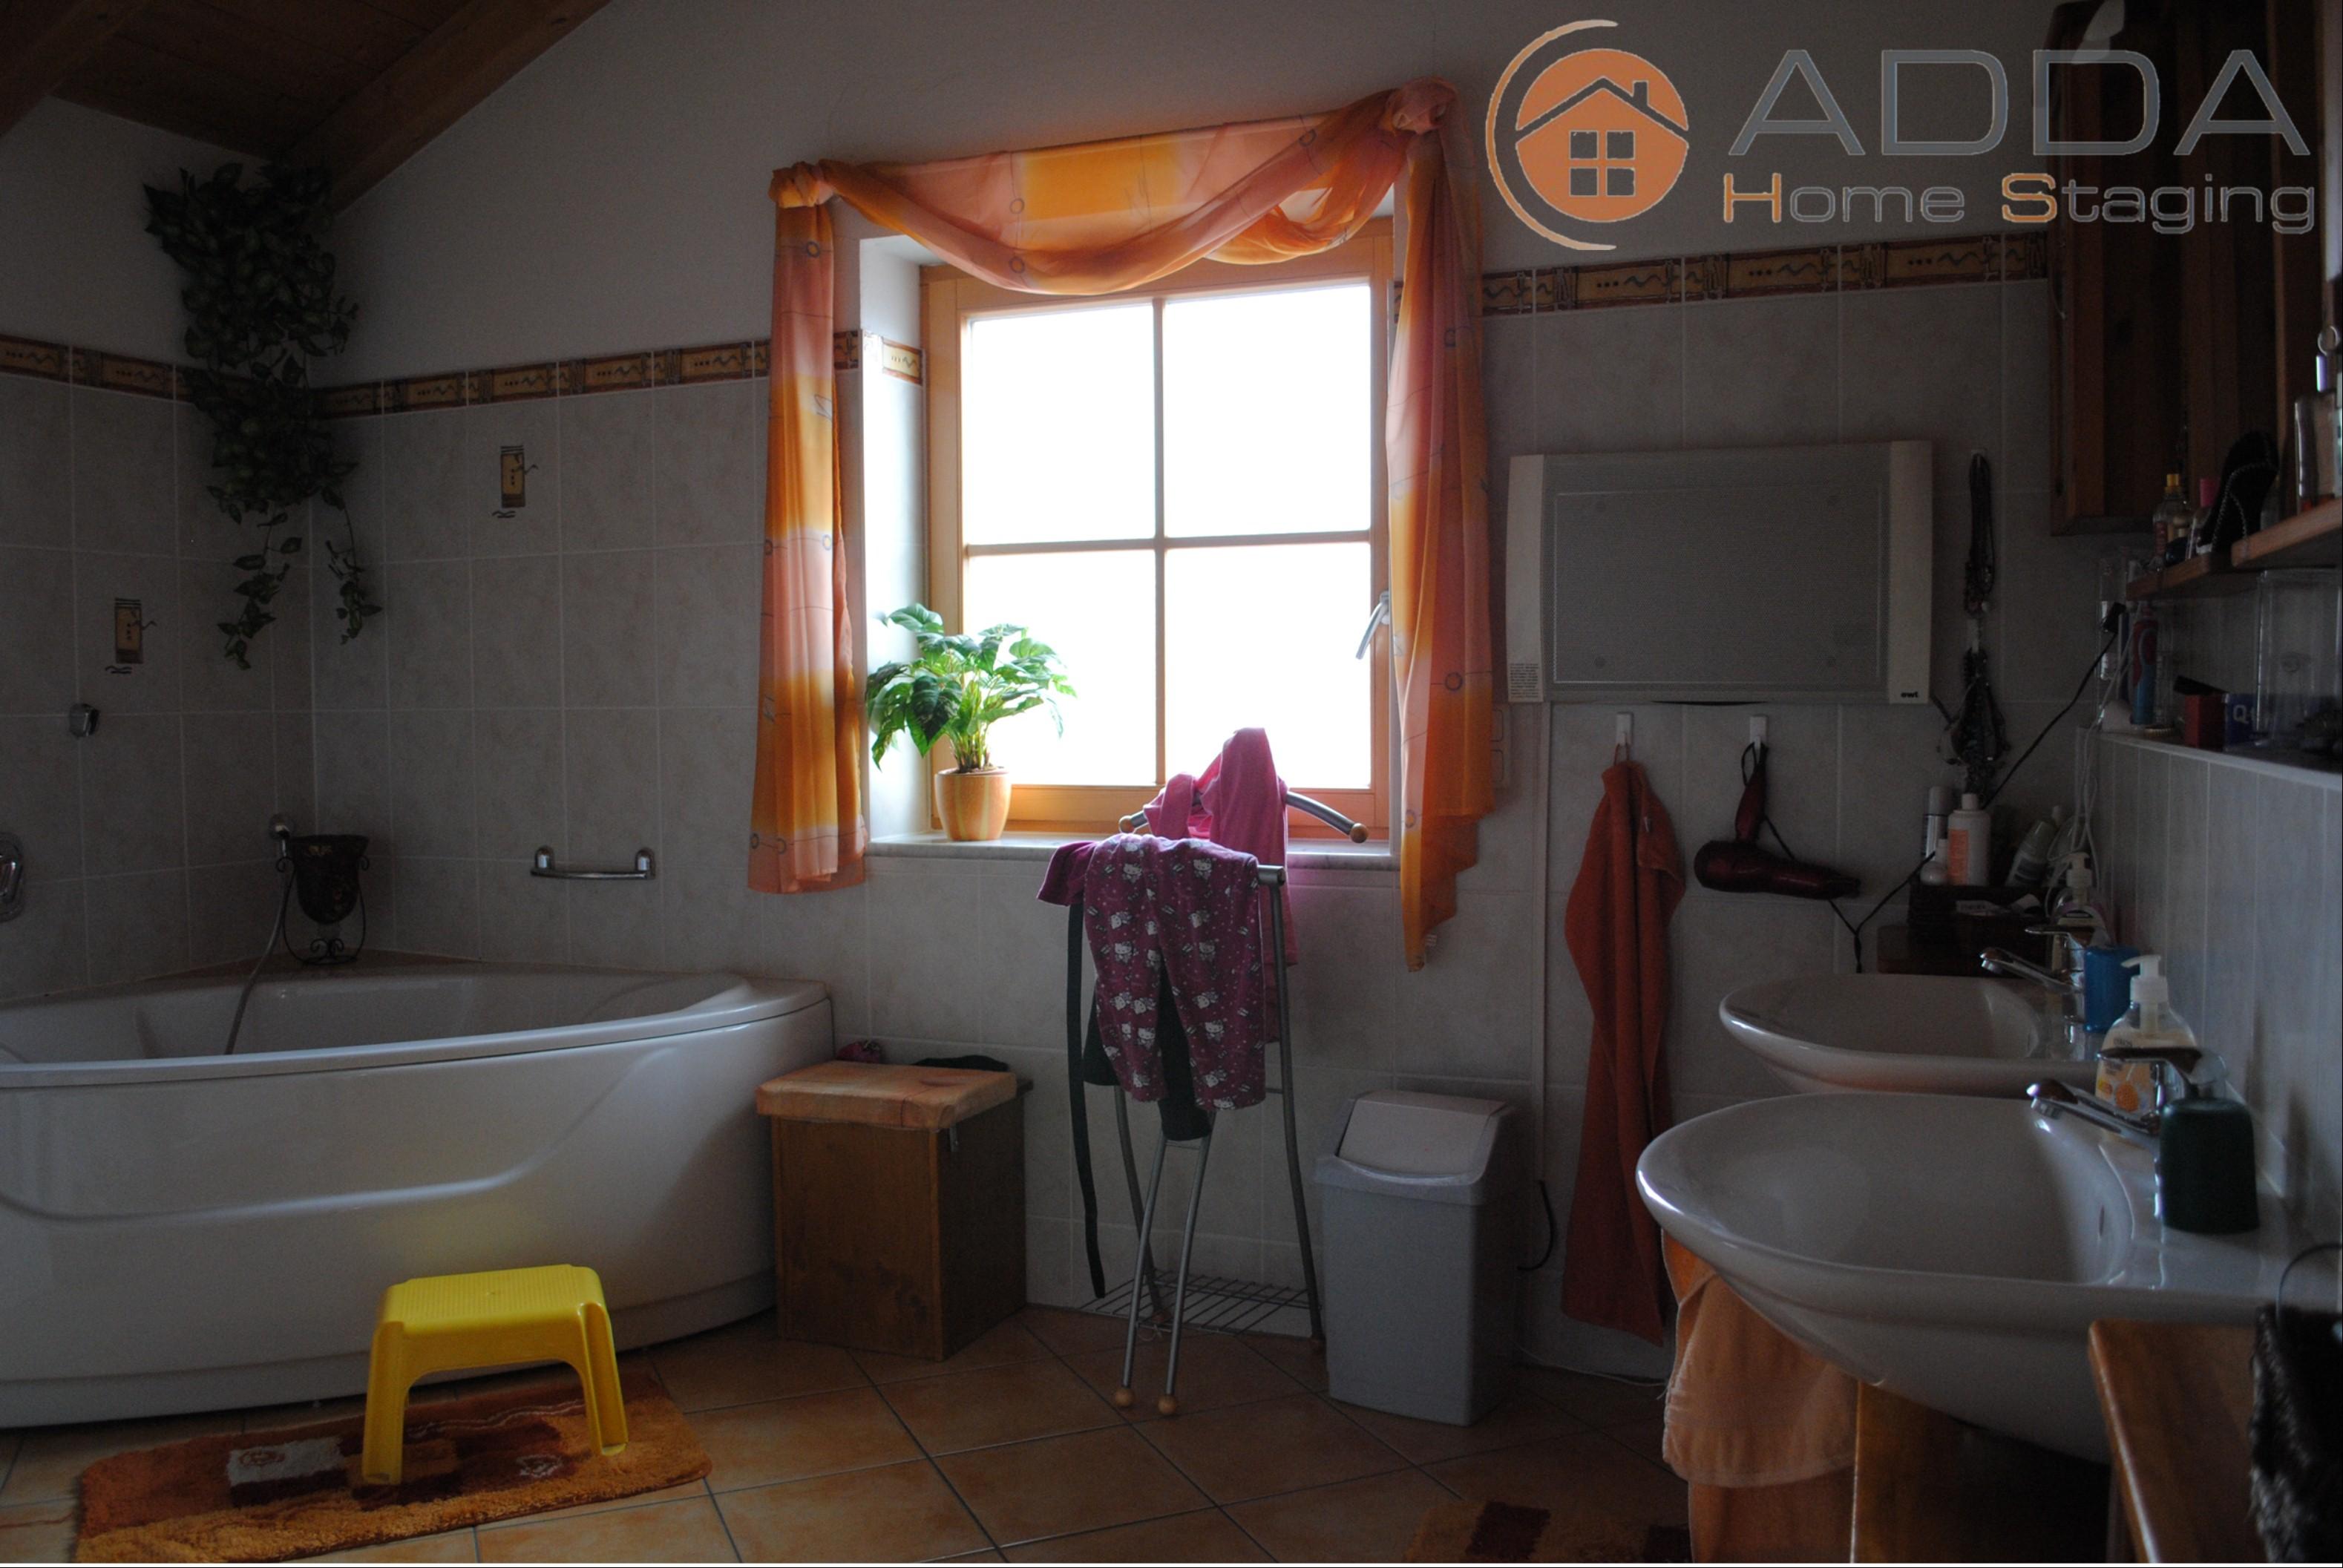 Badezimmer vor dem Home Staging #ferienwohnung #raumdesign #raumgestaltung ©ADDA Home Staging